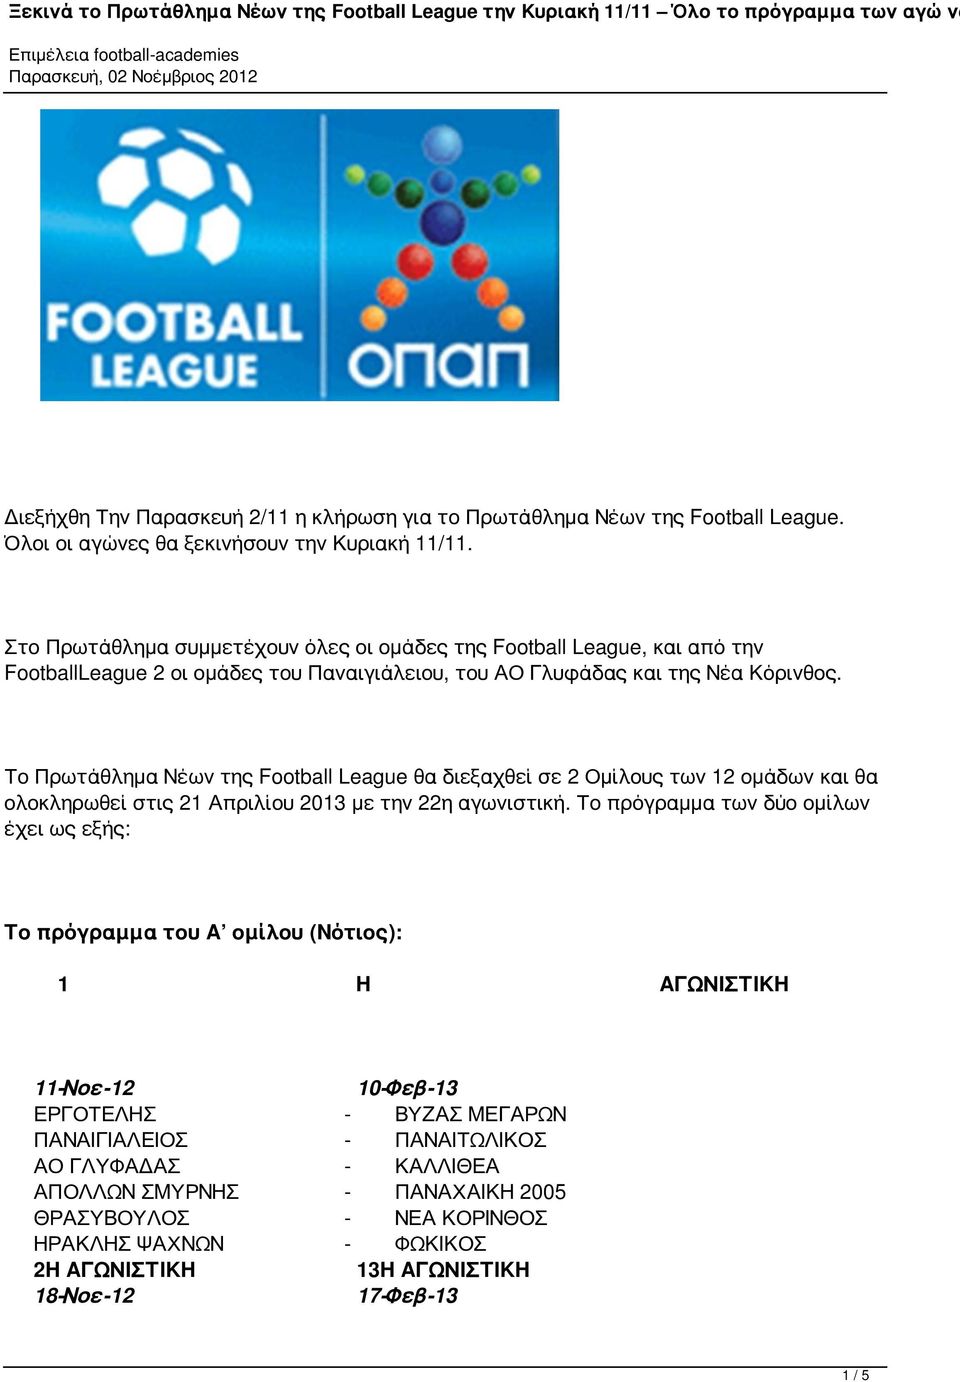 Το Πρωτάθλημα Νέων της Football League θα διεξαχθεί σε 2 Ομίλους των 12 ομάδων και θα ολοκληρωθεί στις 21 Απριλίου 2013 με την 22η αγωνιστική.